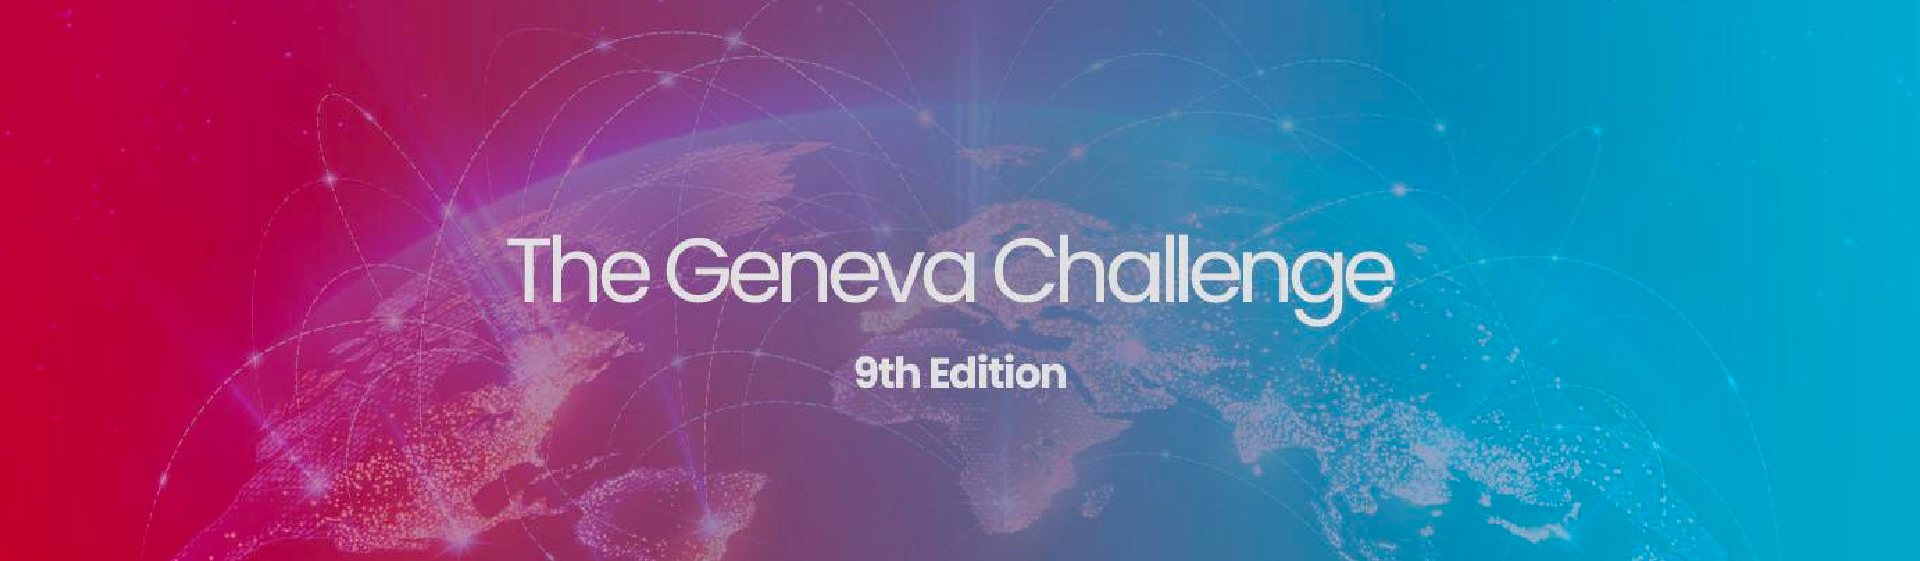 Geneva-challenge